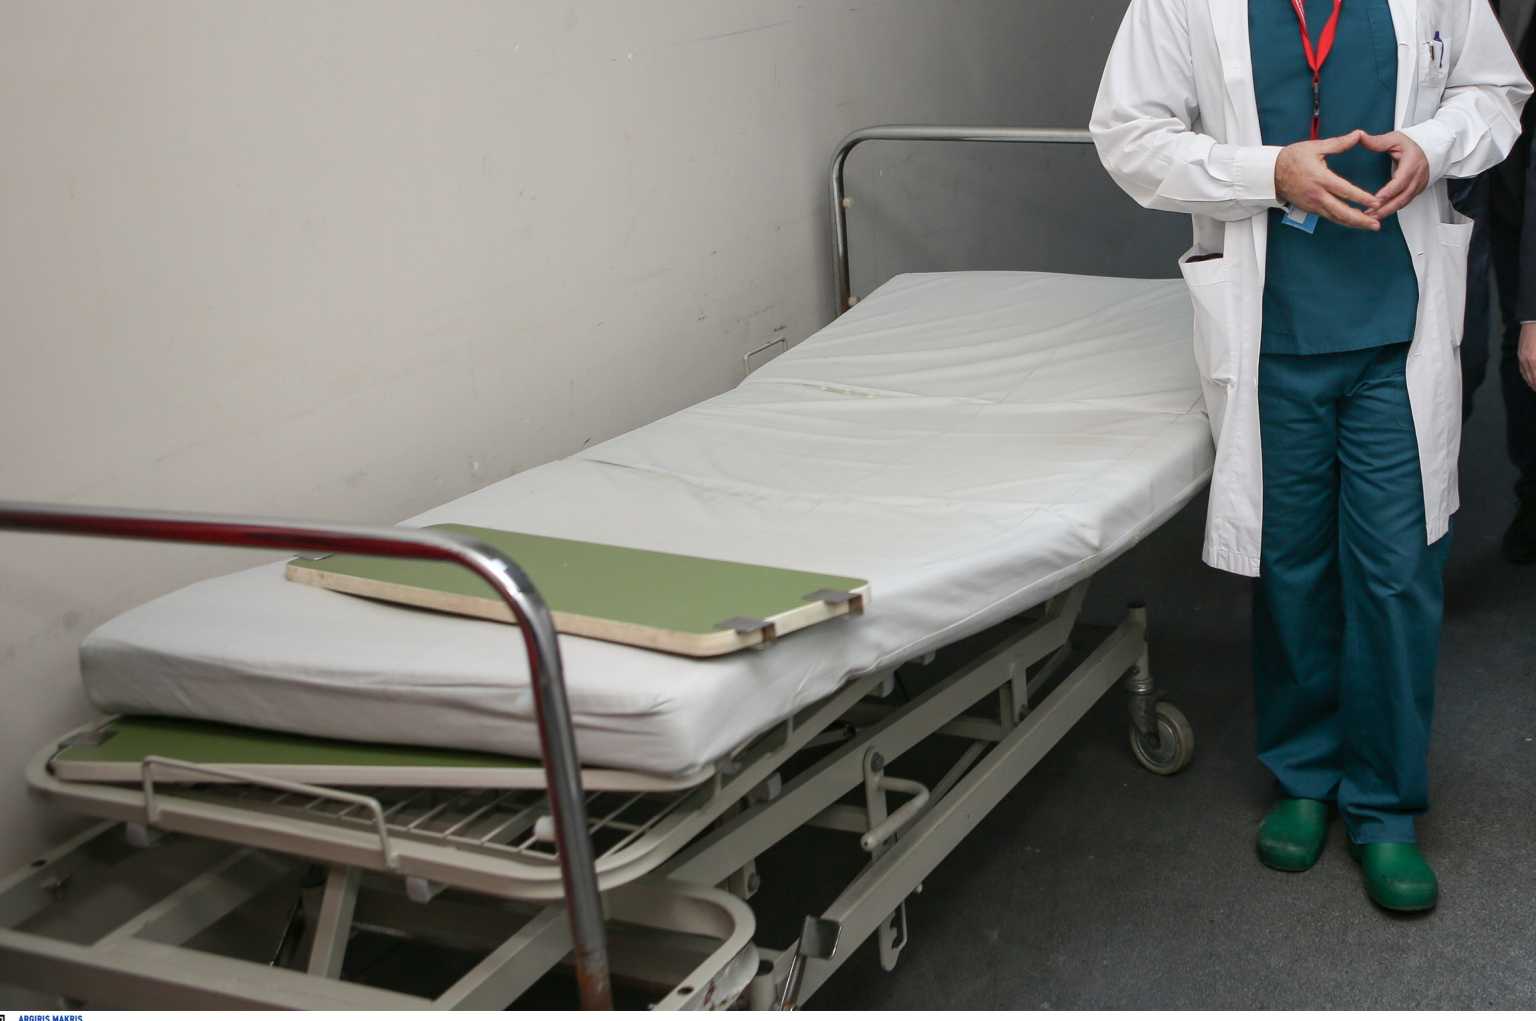 Λαμία: Σε ψυχιατρική κλινική η νοσηλεύτρια – αρνήτρια που έτρεχε γυμνή στο νοσοκομείο